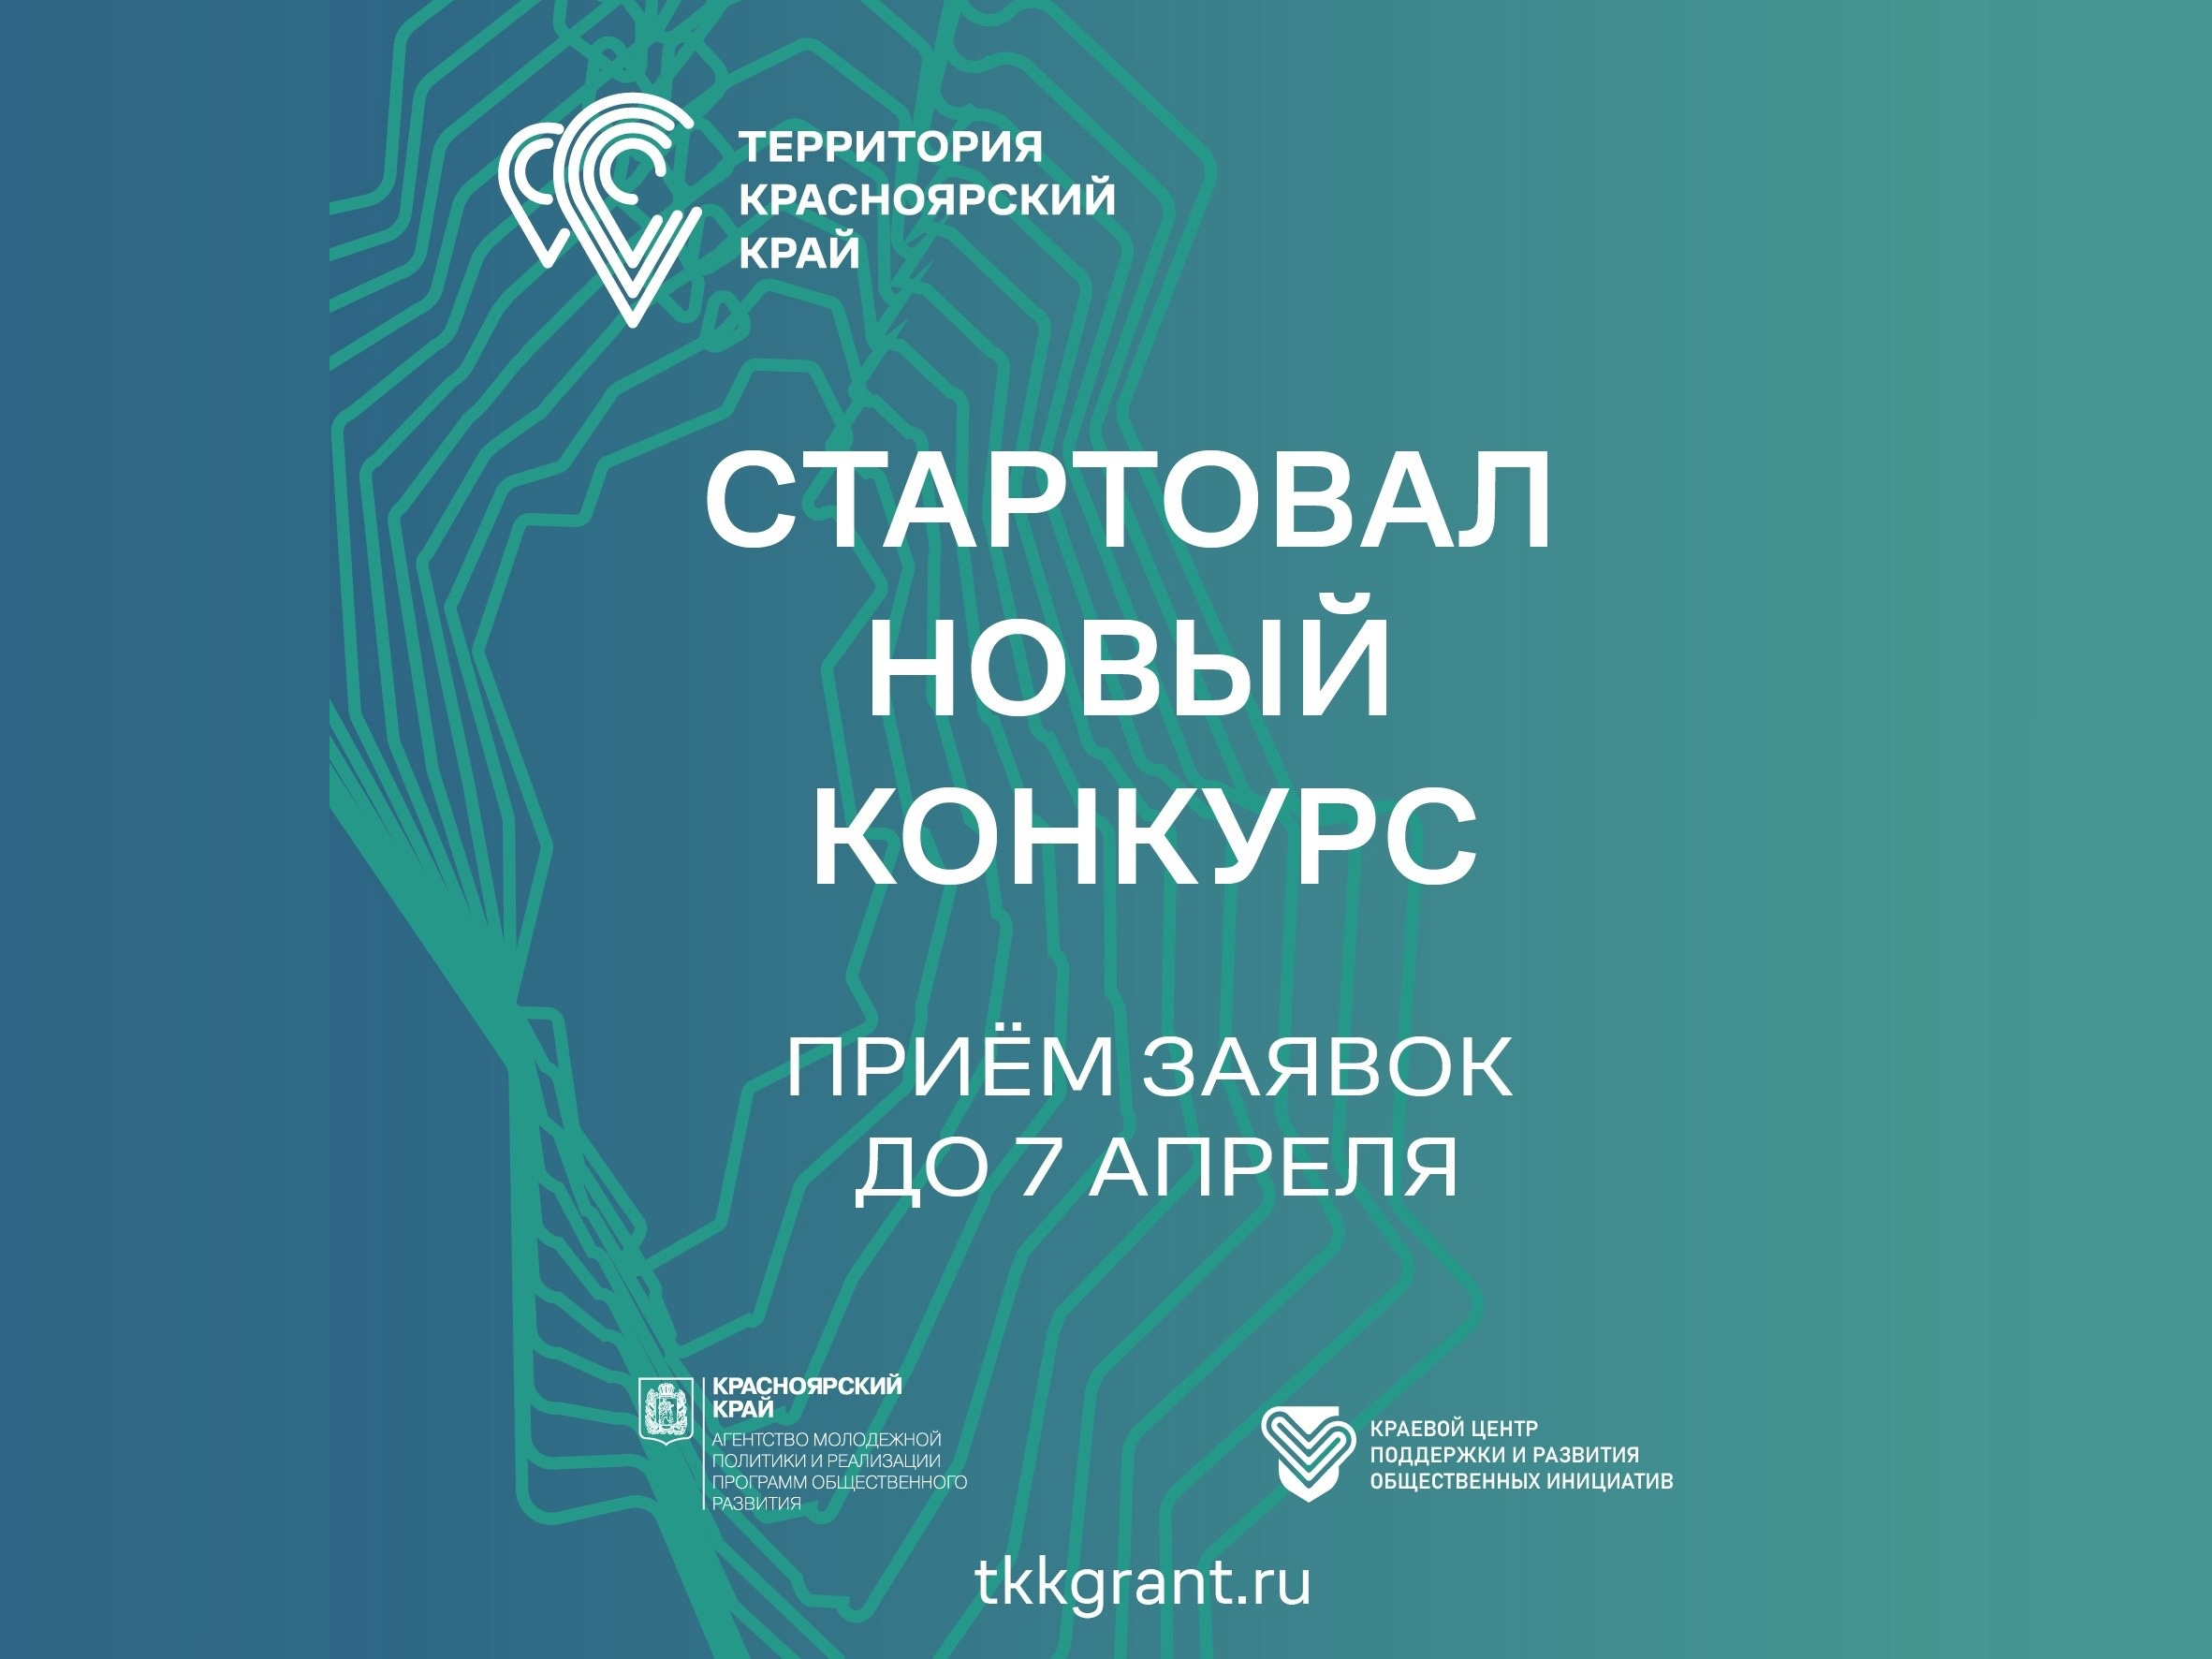 Молодежь Ачинского района приглашают принять участие в первом конкурсе проекта «Территория Красноярский край».